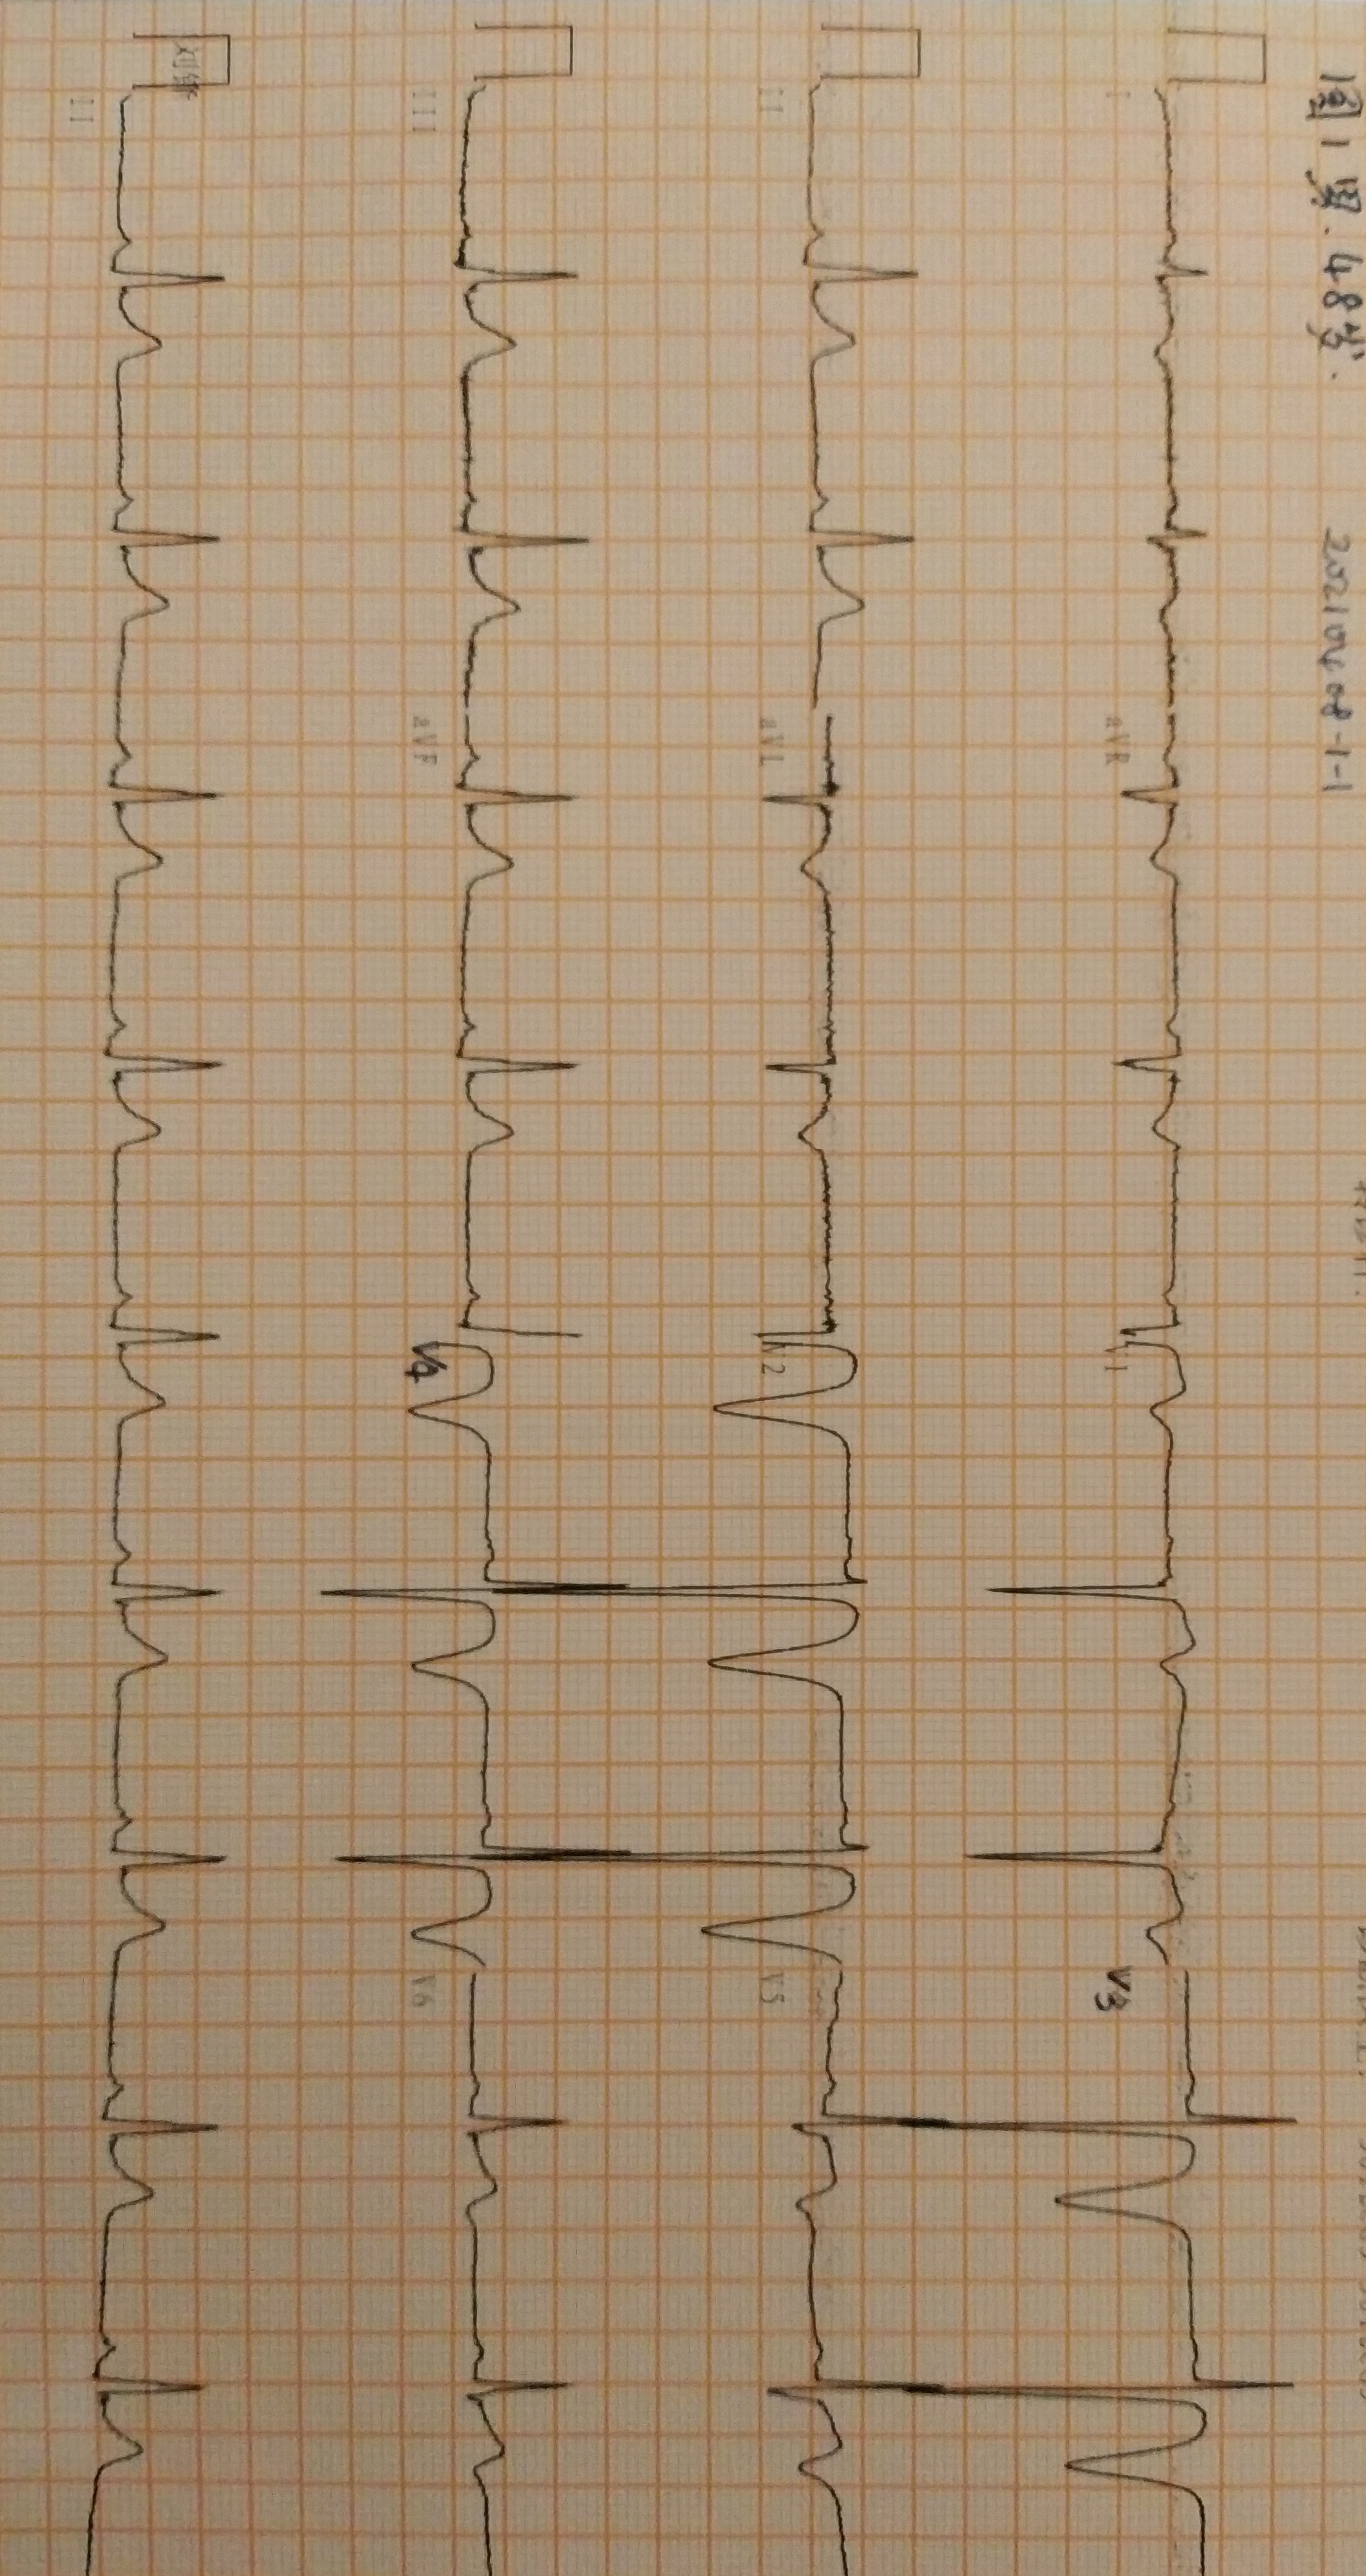 心电图常见干扰波形图片